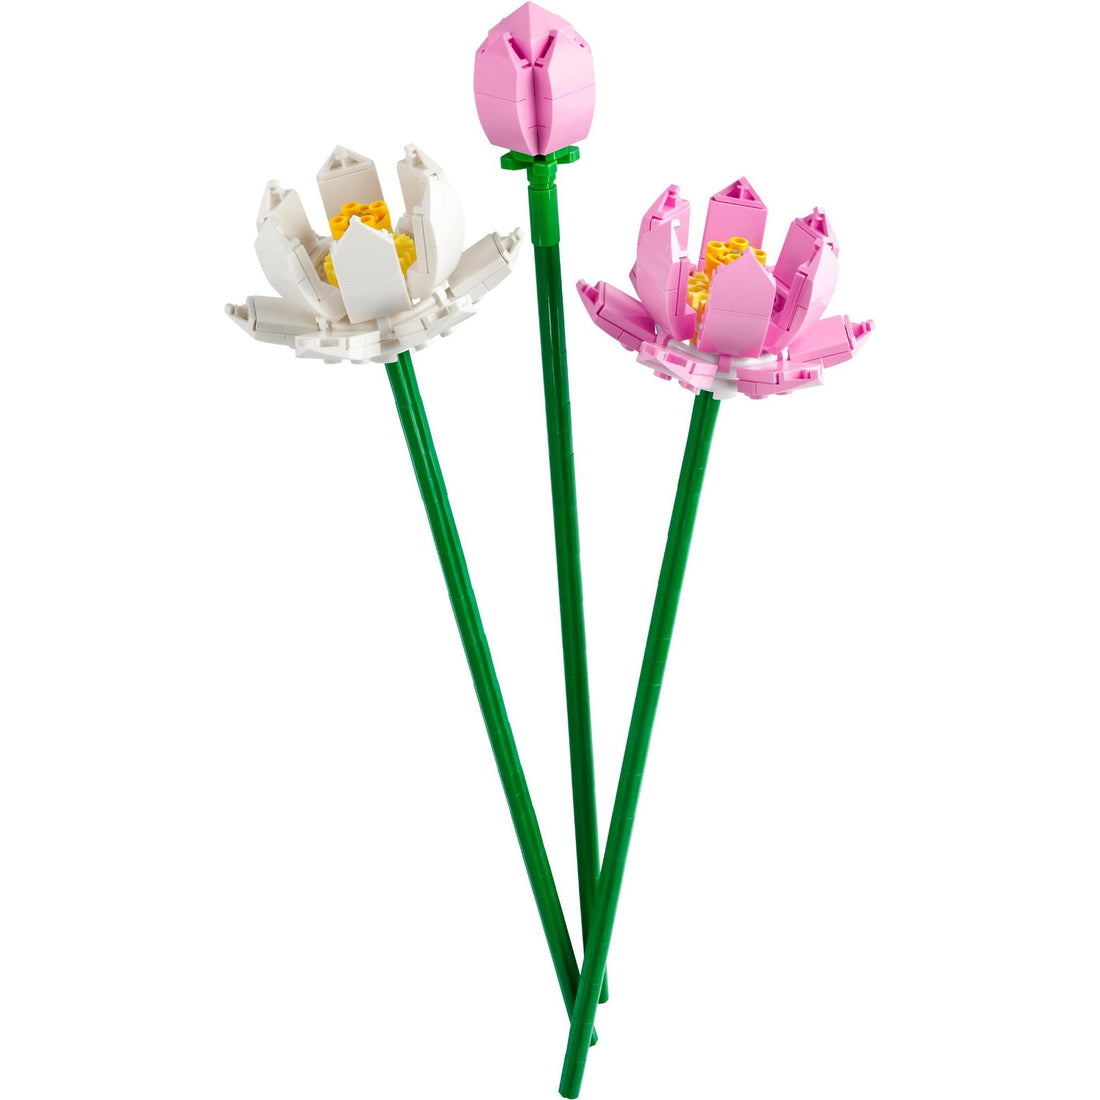 LEL Flowers - Lotus flowers